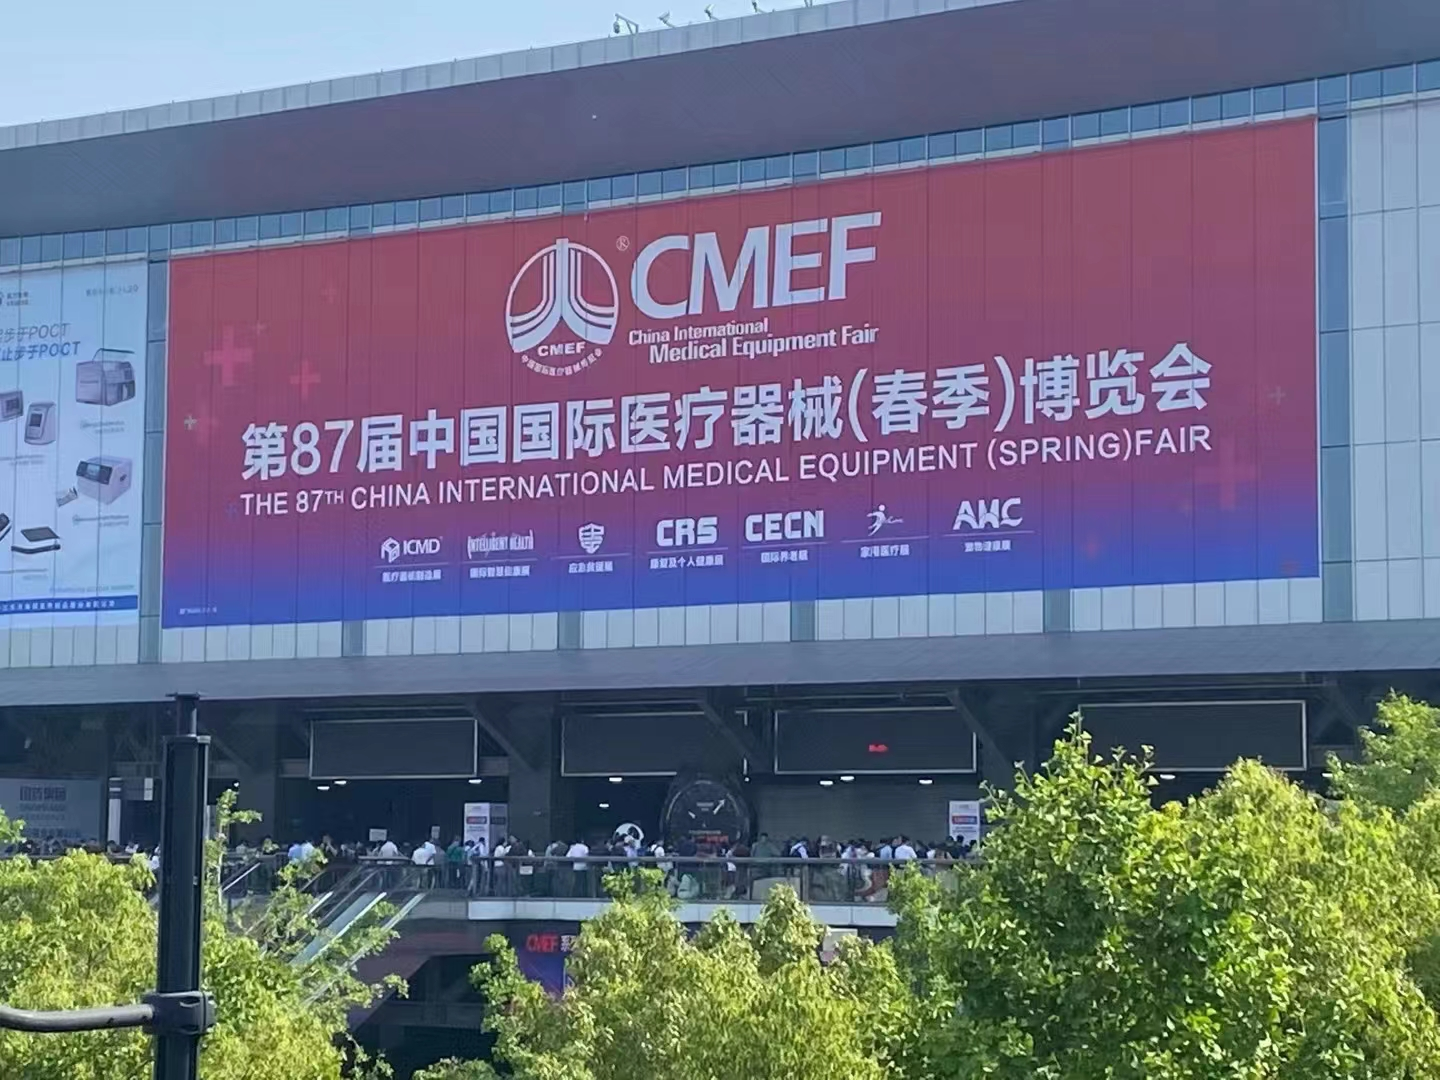 第87届中国国际医疗器械（春季）博览会